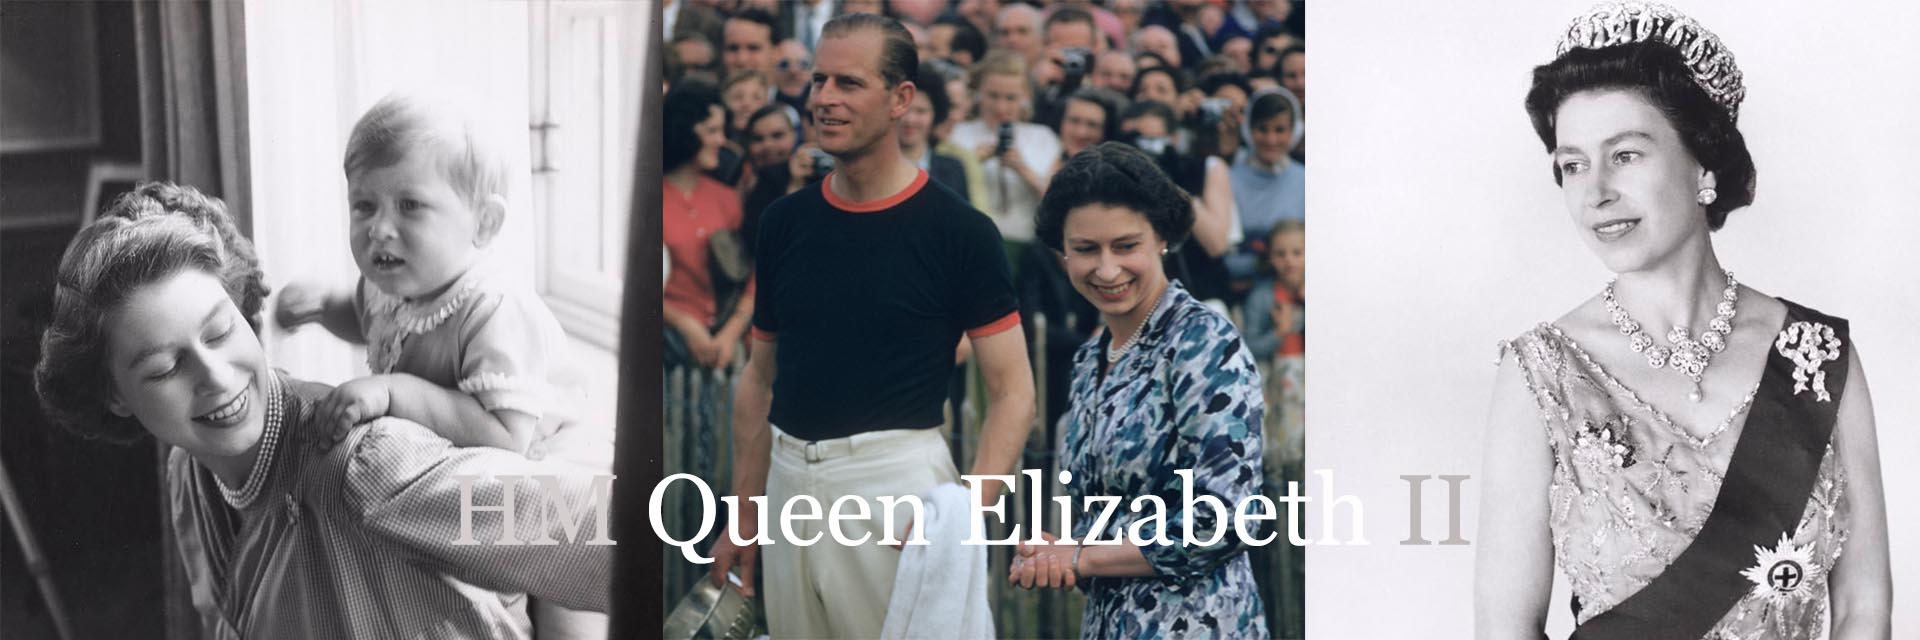 prints of HM Queen Elizabeth II